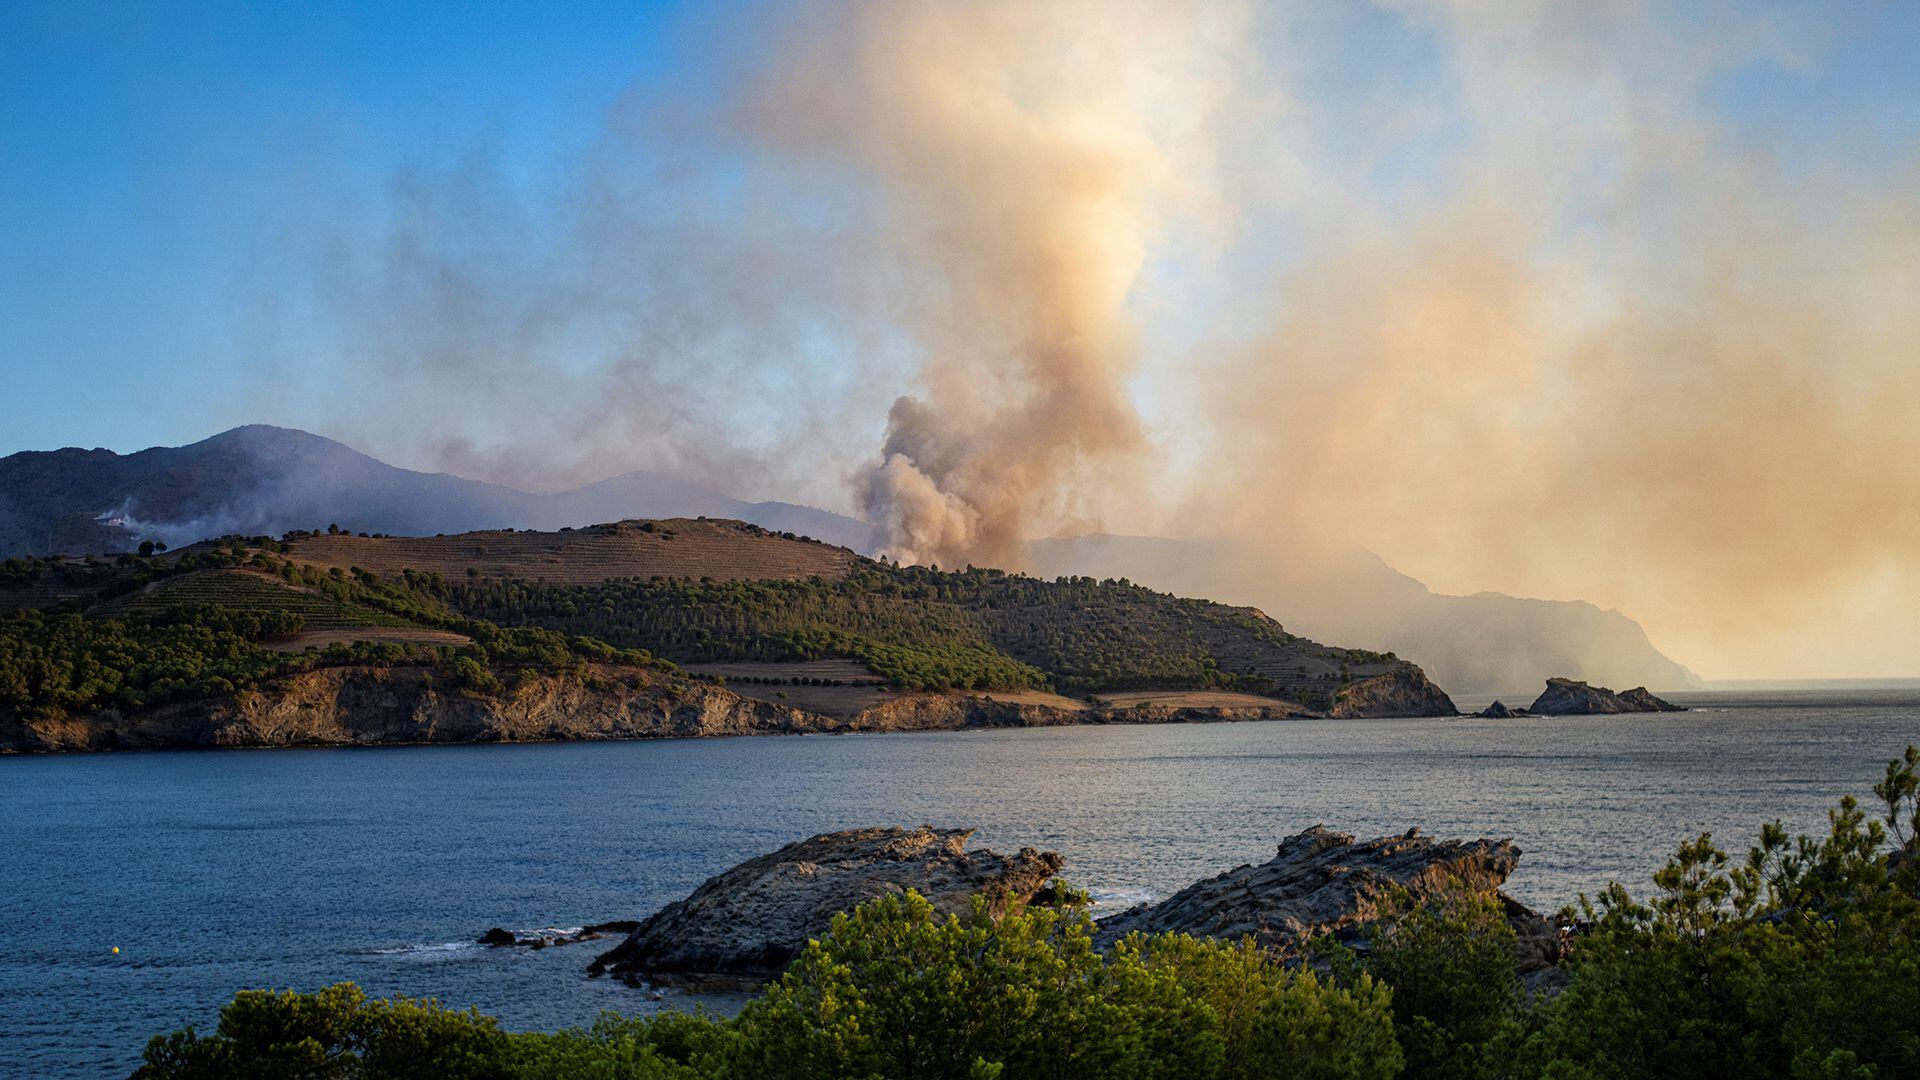 Vista del incendio forestal que afecta a los municipios de Colera y Portbou (Girona).